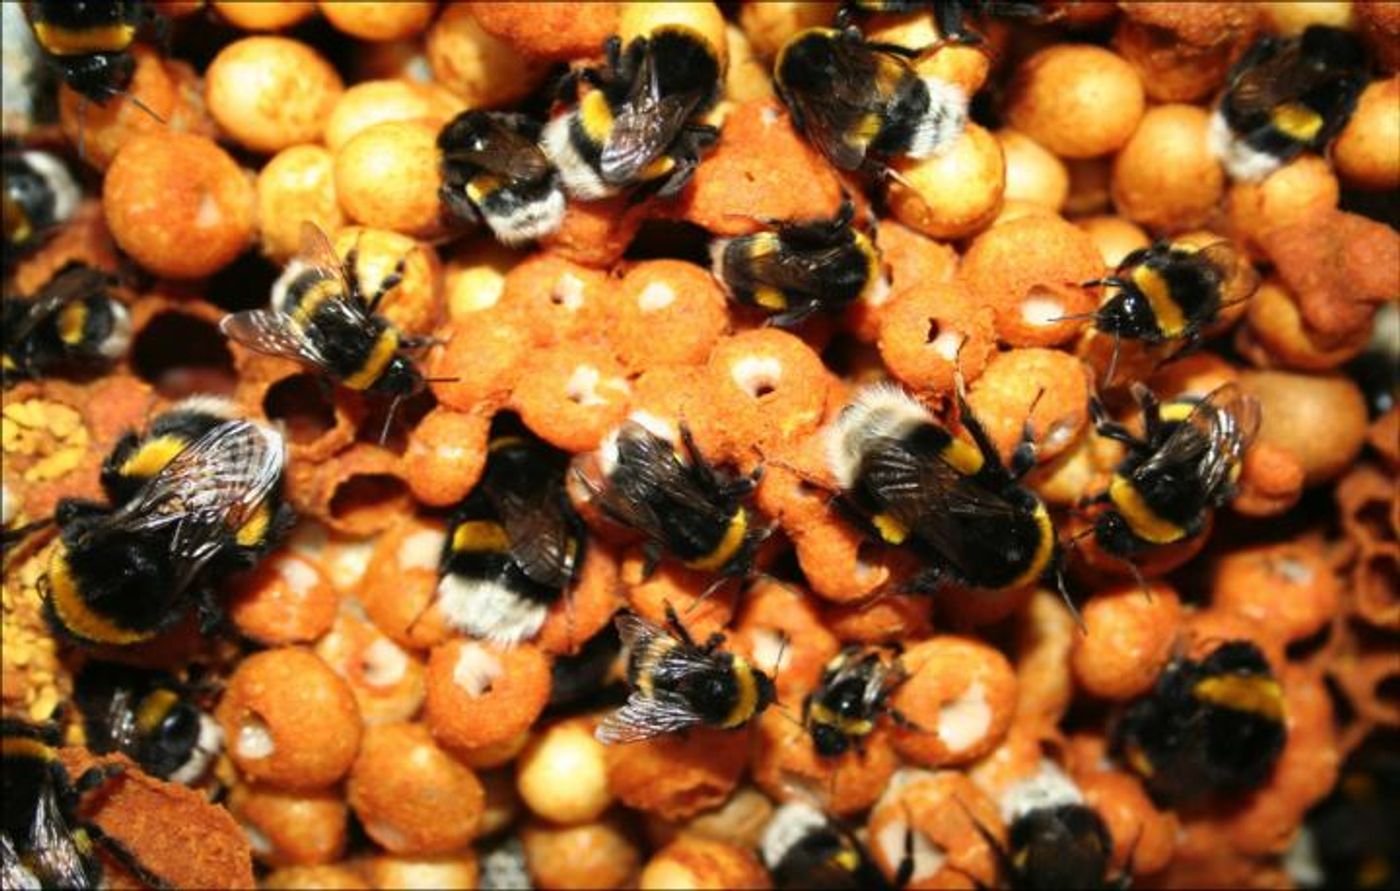 Bumblebee colony. / Credit: TJ Colgan